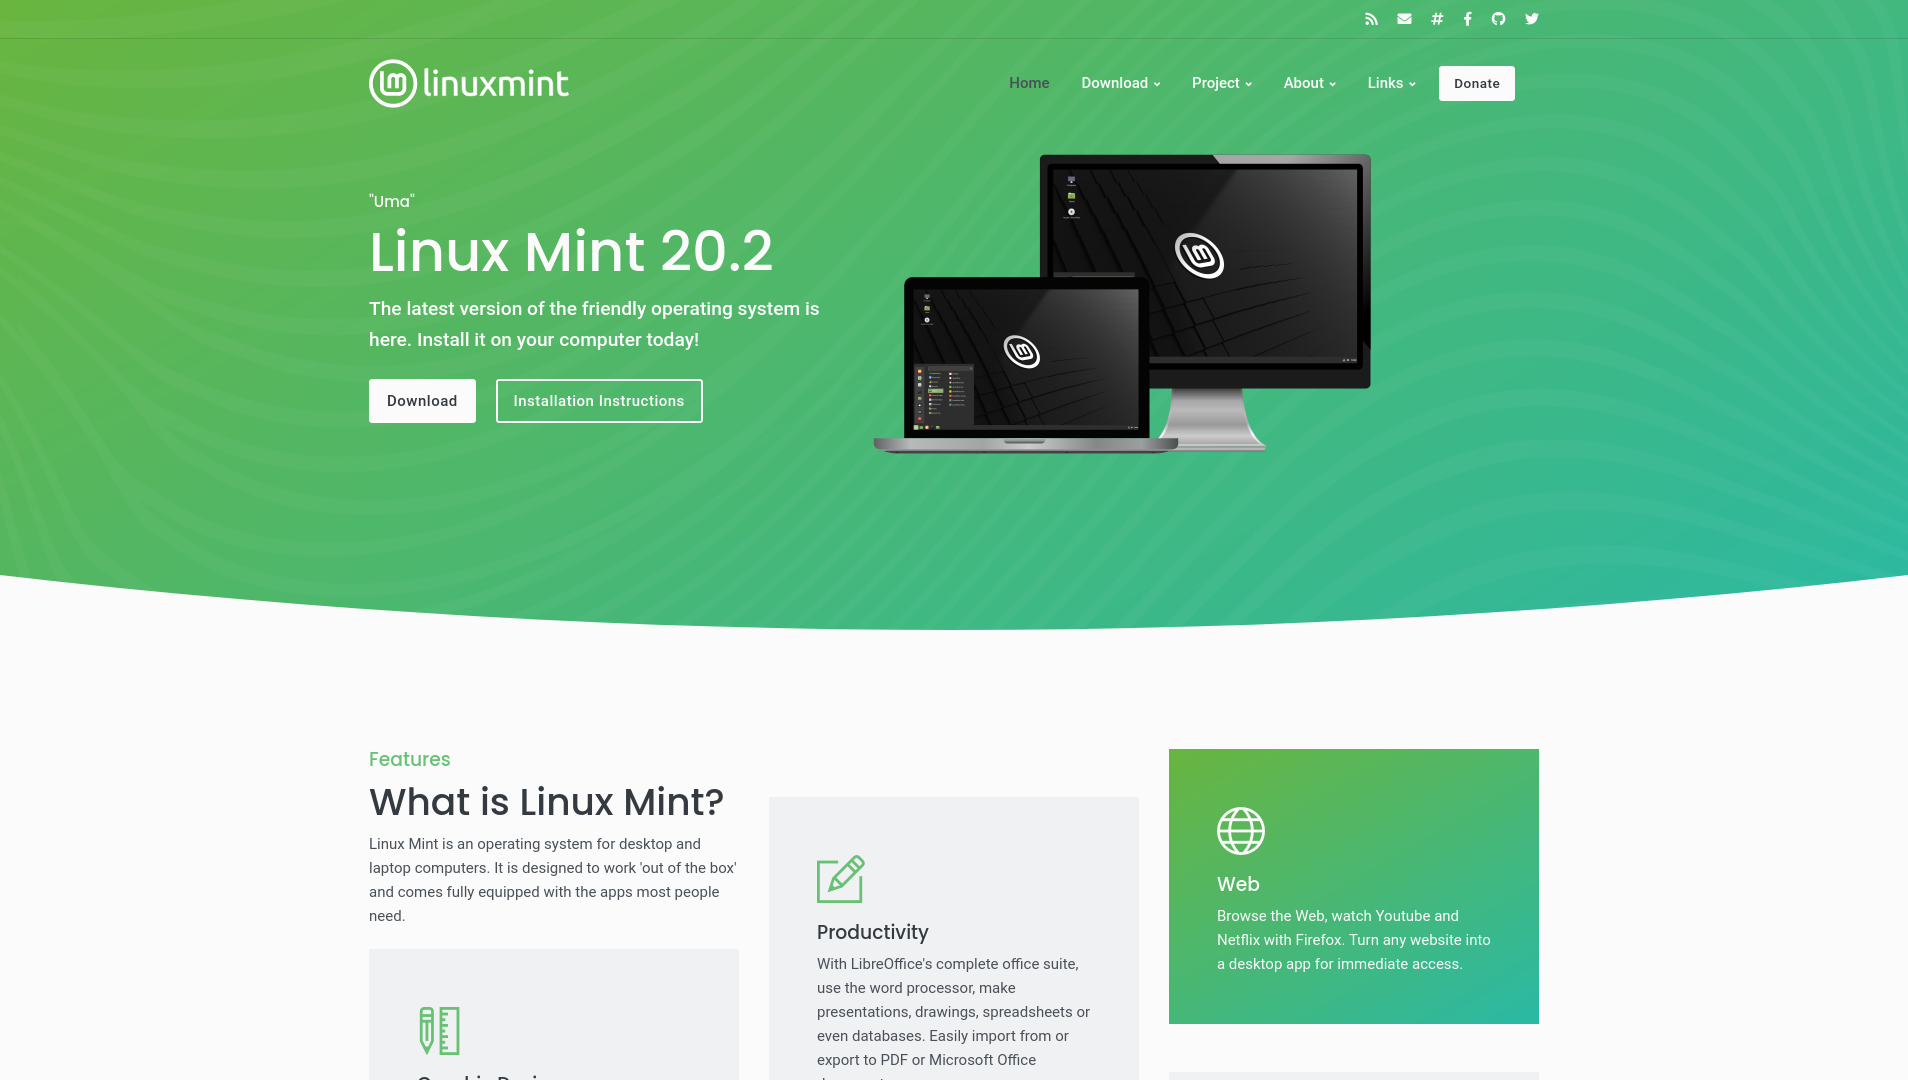 neuer anstrich, neuer inhalt: linux mint stellt neue website vor